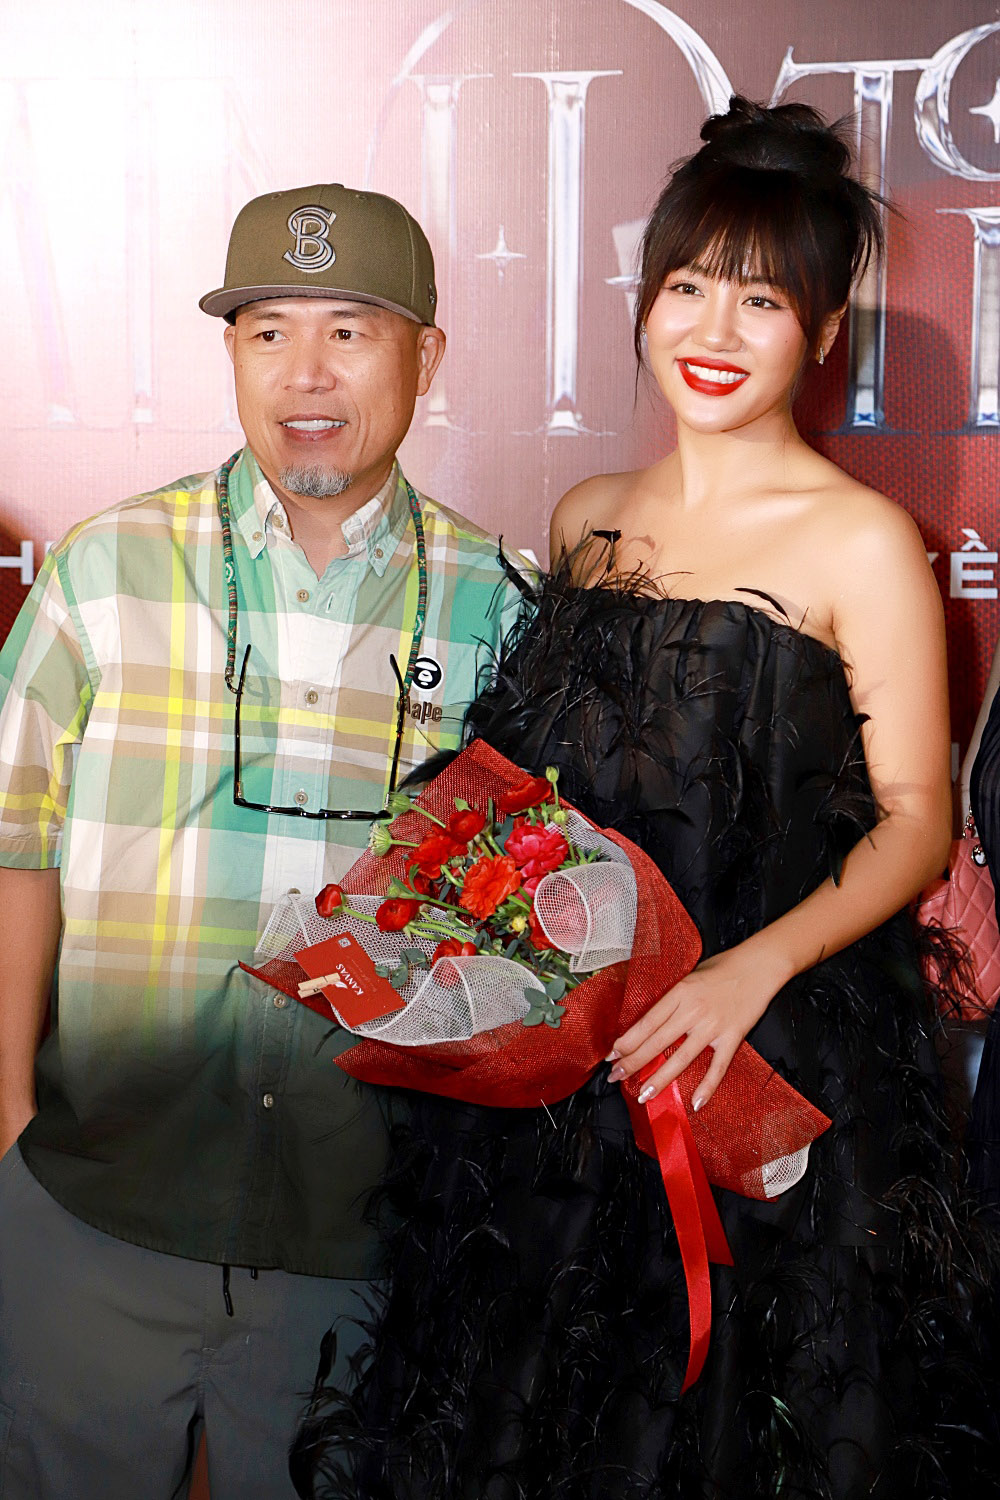 Ca khúc lấy cảm hứng từ Taylor Swift & Katy Perry vừa ra mắt của Văn Mai Hương leo thẳng Top 1 iTunes Việt Nam - Ảnh 8.